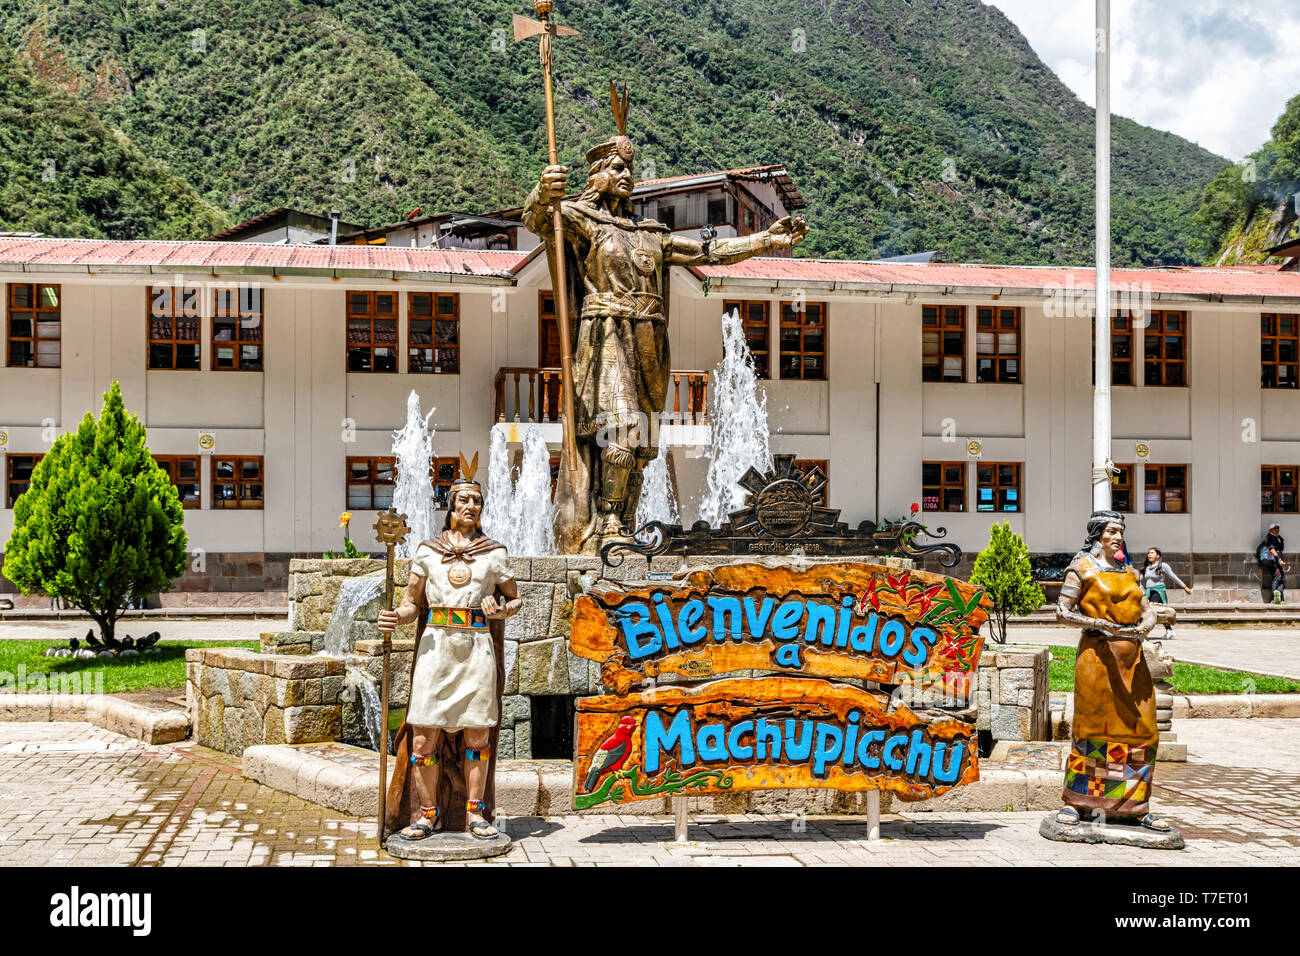 Aguas Calientes, Pérou - Avril : Statue de Pachacuti à Aguas Calientes, le Pérou. Pachacuti fut le 9e Sapa Inca du Royaume de Cuzco. Banque D'Images